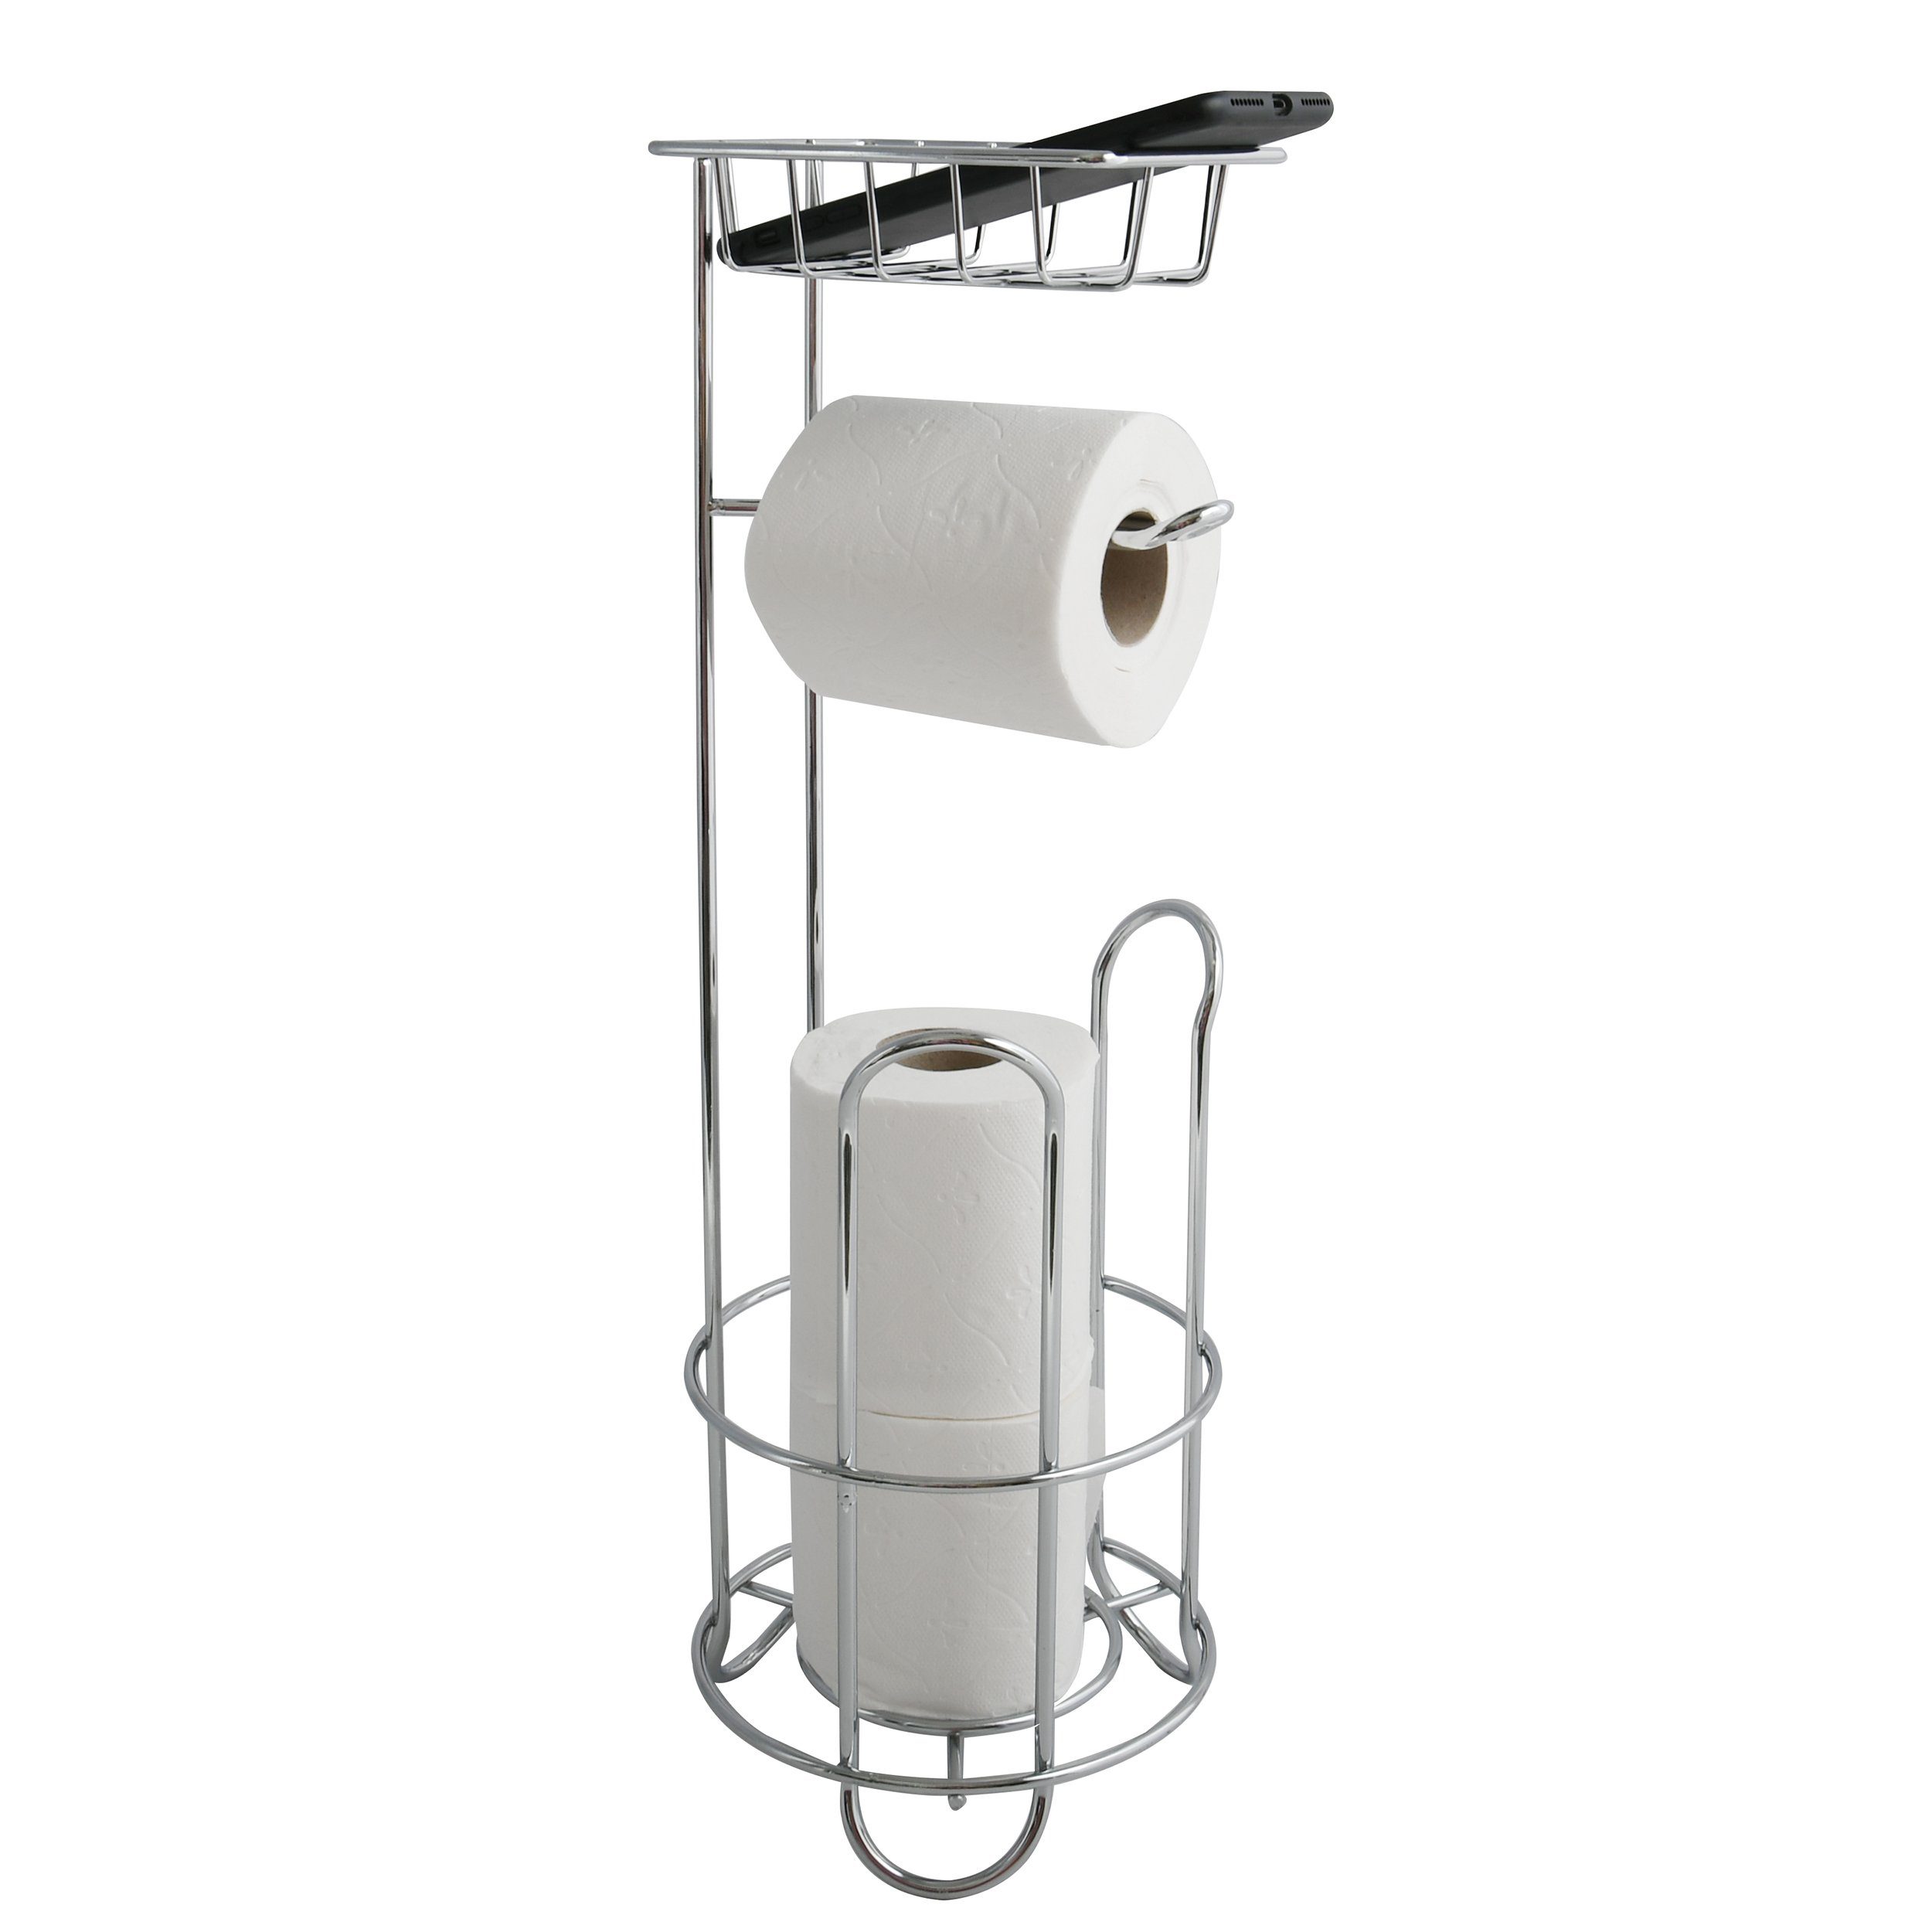 MSV Toilettenpapierhalter LILO, verchromter Stahl, kombinierter  Toilettenpapierhalter und Ersatzrollenhalter - für 2 Ersatzrollen, mit  Ablagekorb, edle Hochglanz-Optik